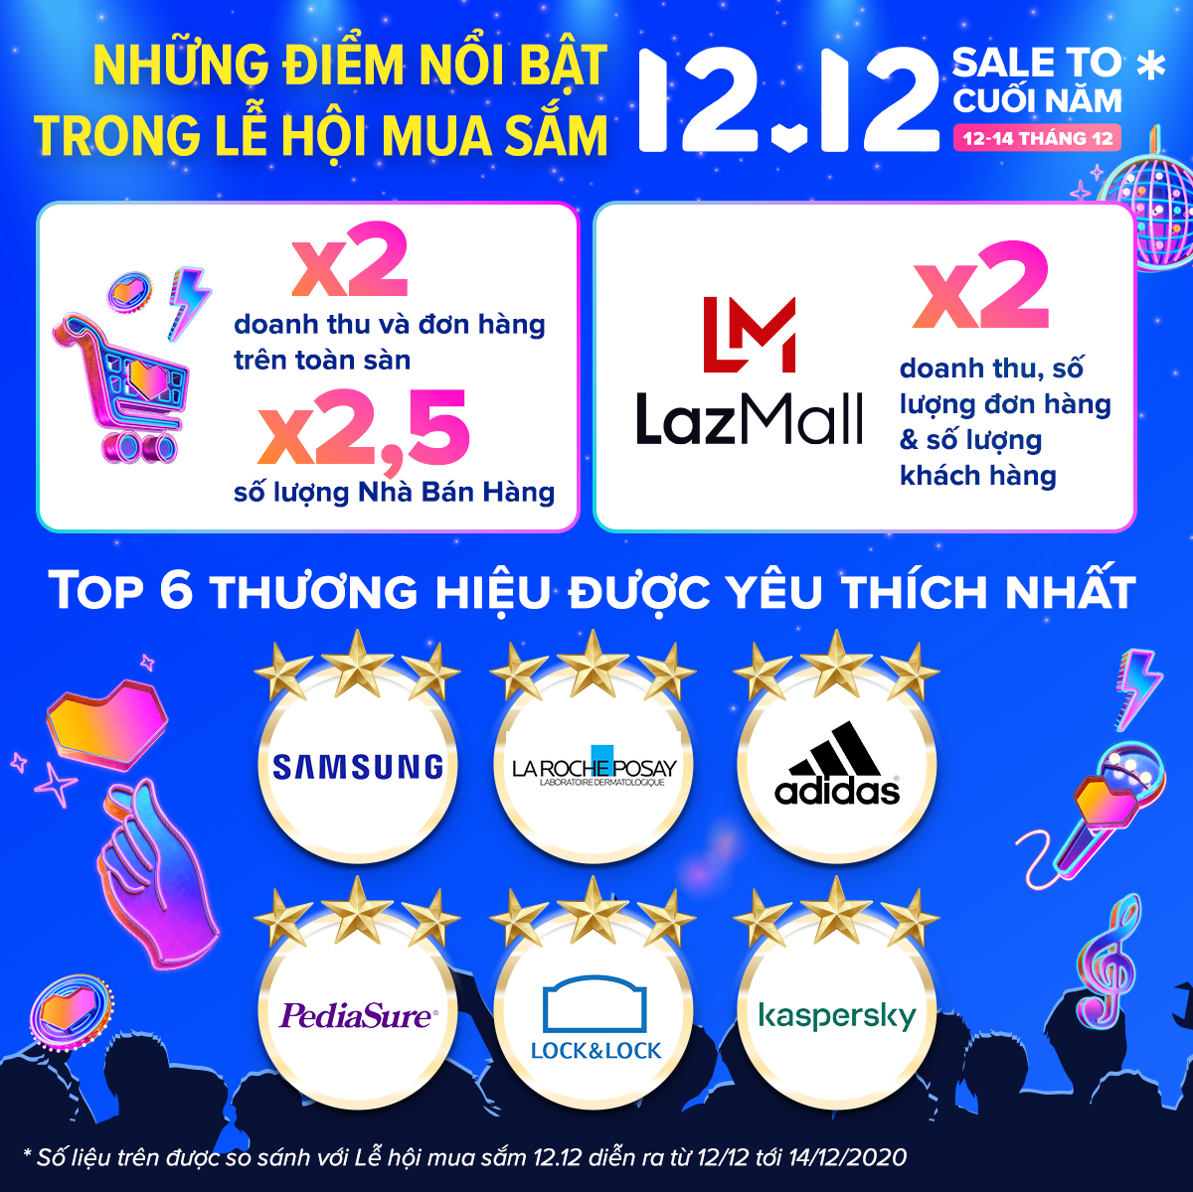 Doanh thu và số lượng đơn hàng trong Lễ hội mua sắm 12.12 của Lazada Việt Nam tăng gấp đôi so với cùng kỳ